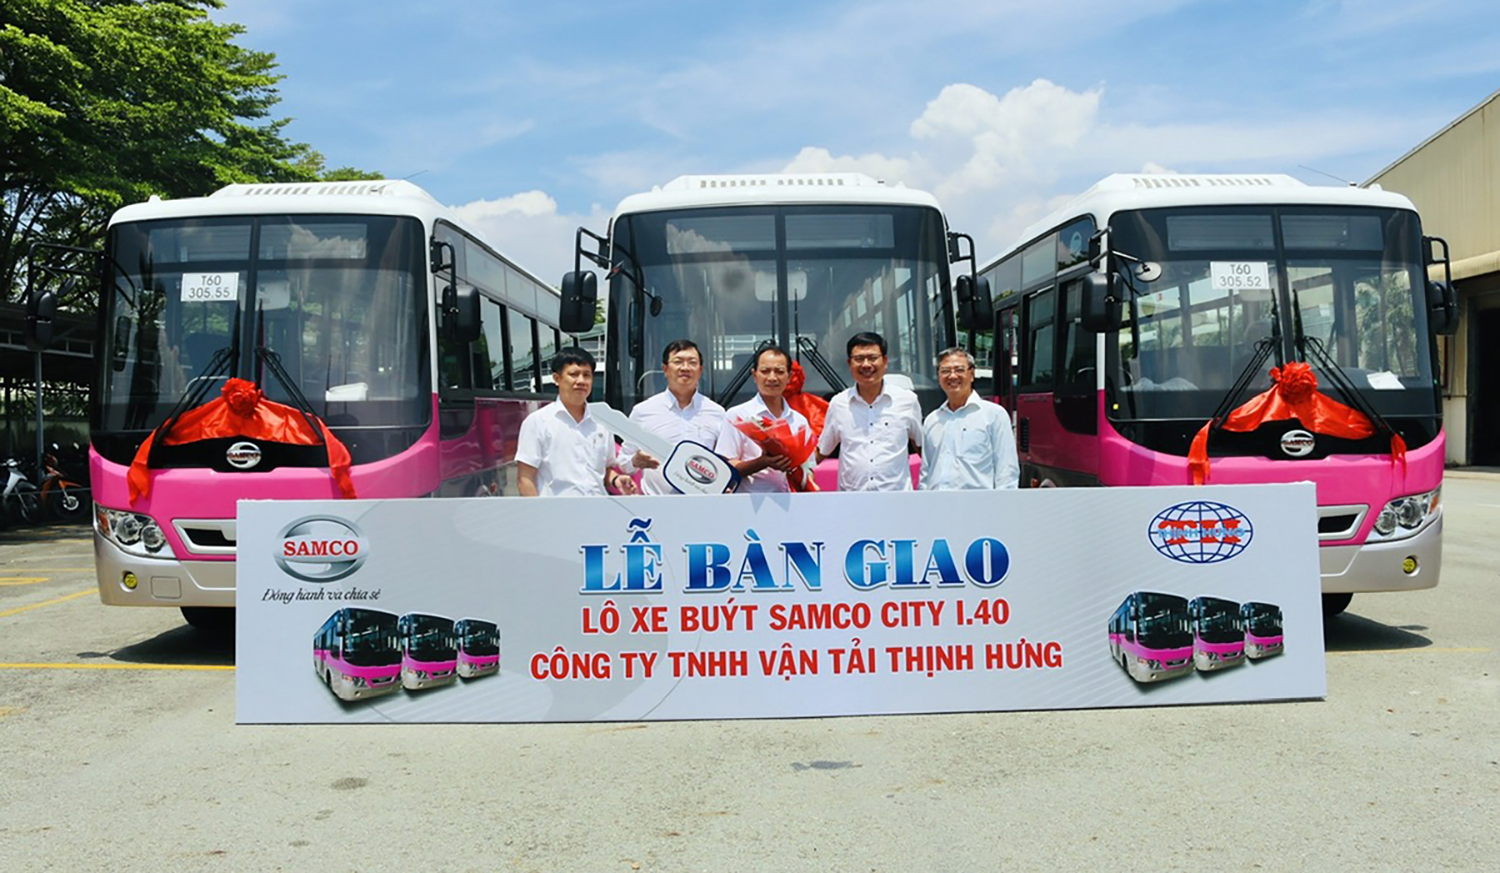 Samco tiếp tục bàn giao thêm lô xe buýt SAMCO CITY I.40 cho công ty TNHH Vận Tải Thịnh Hưng